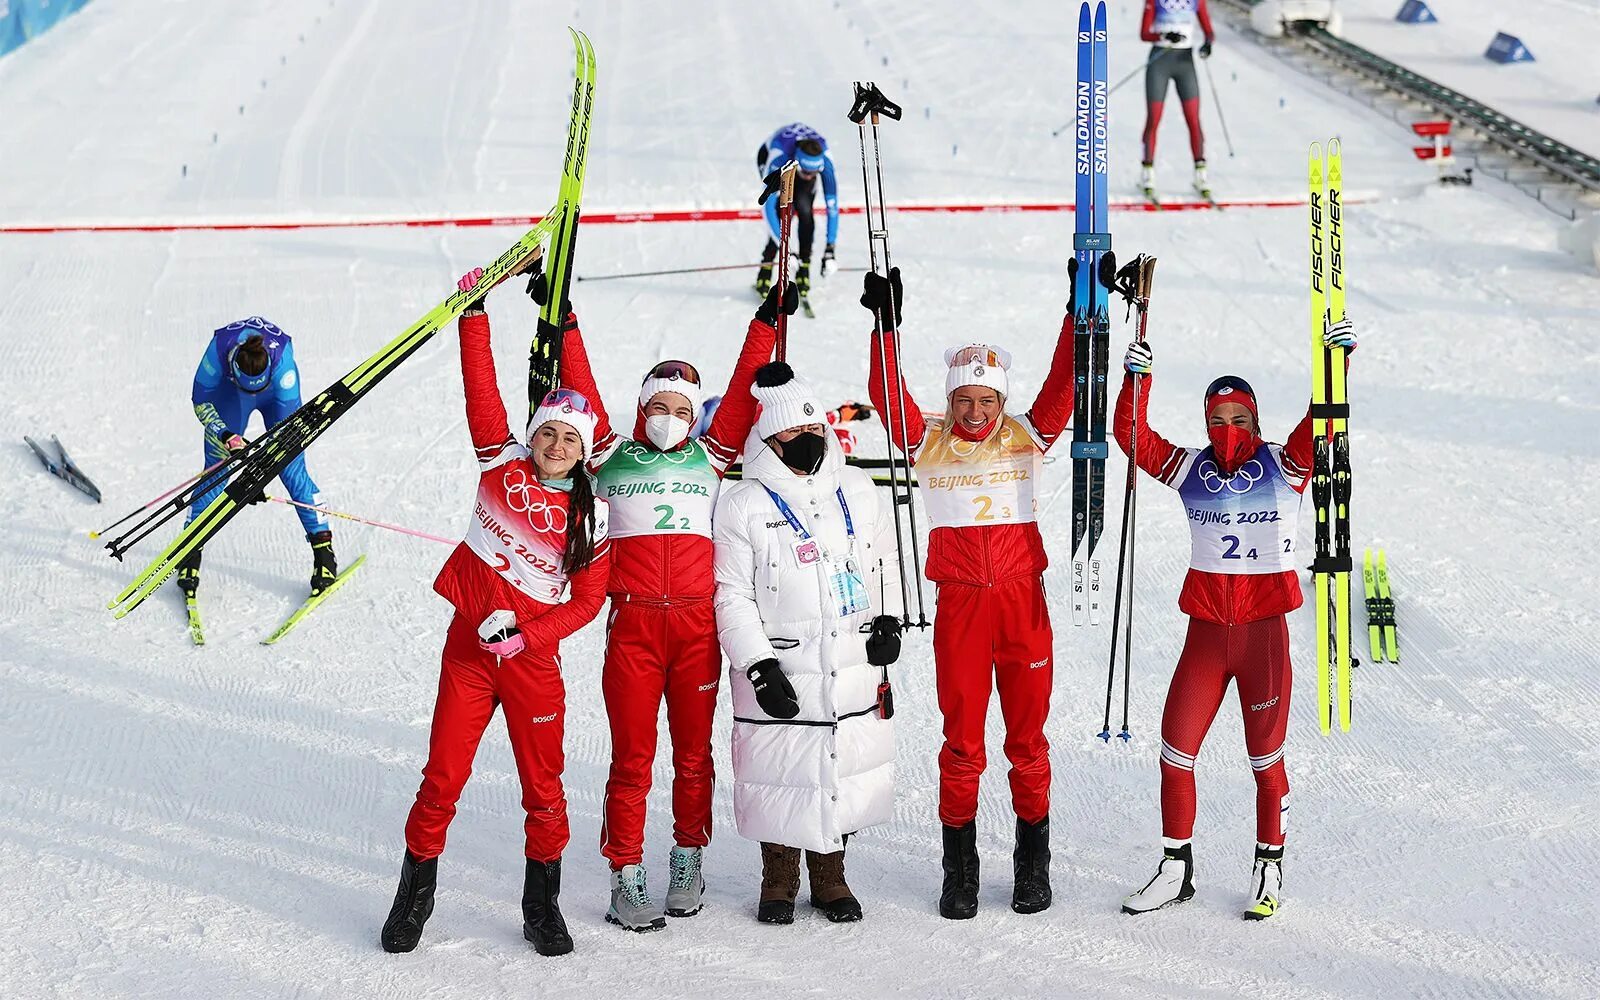 Впереди нас ехали спортсмены лыжники вовремя. Лыжницы России на Олимпиаде 2022.